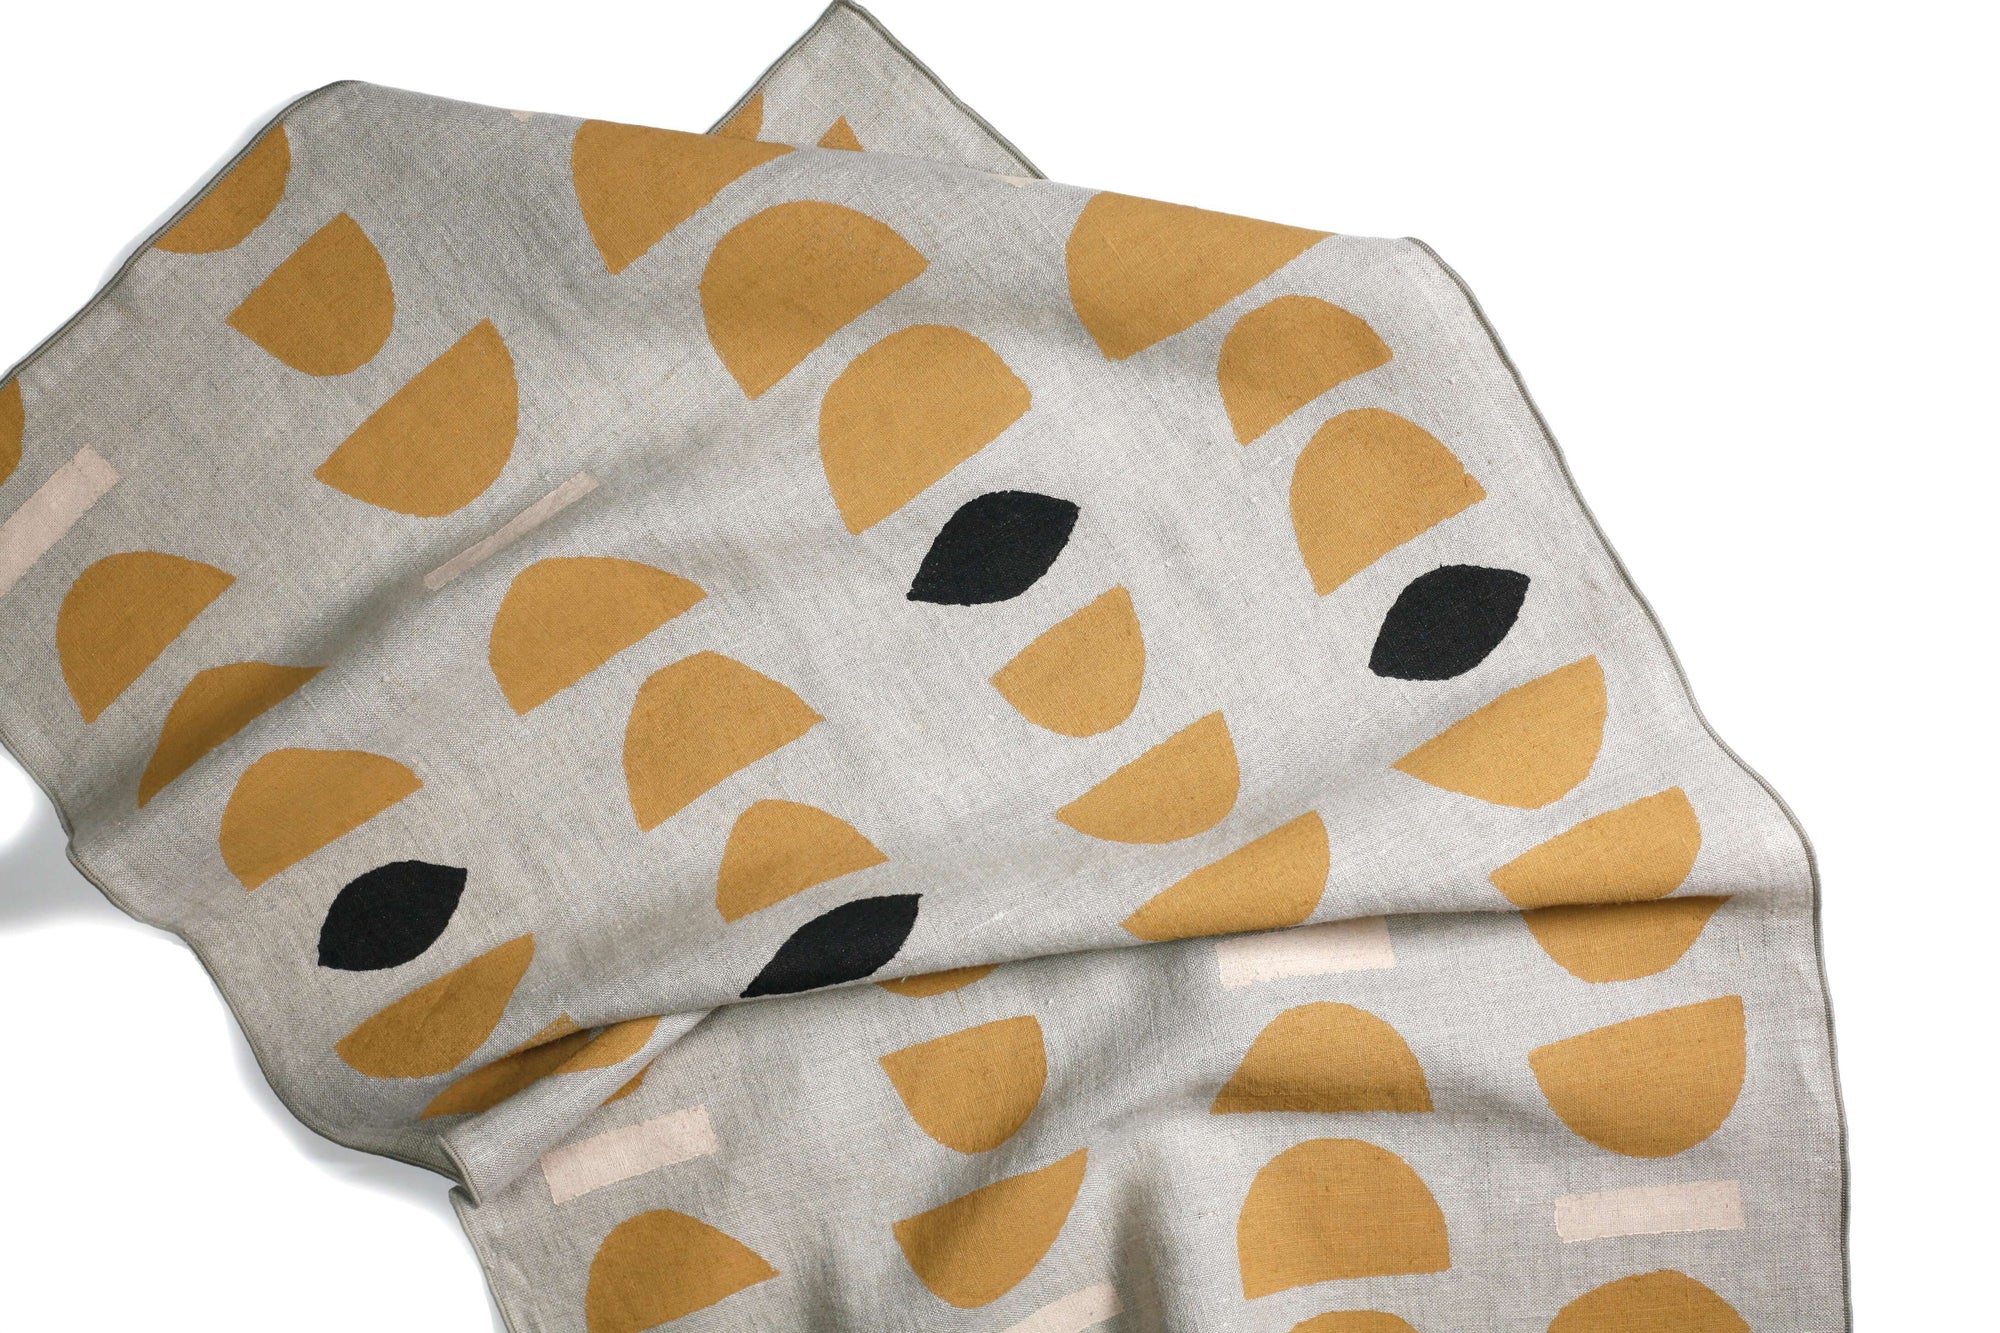 'Stacks' Hand-Printed Linen Tea Towel, Ochre colorway